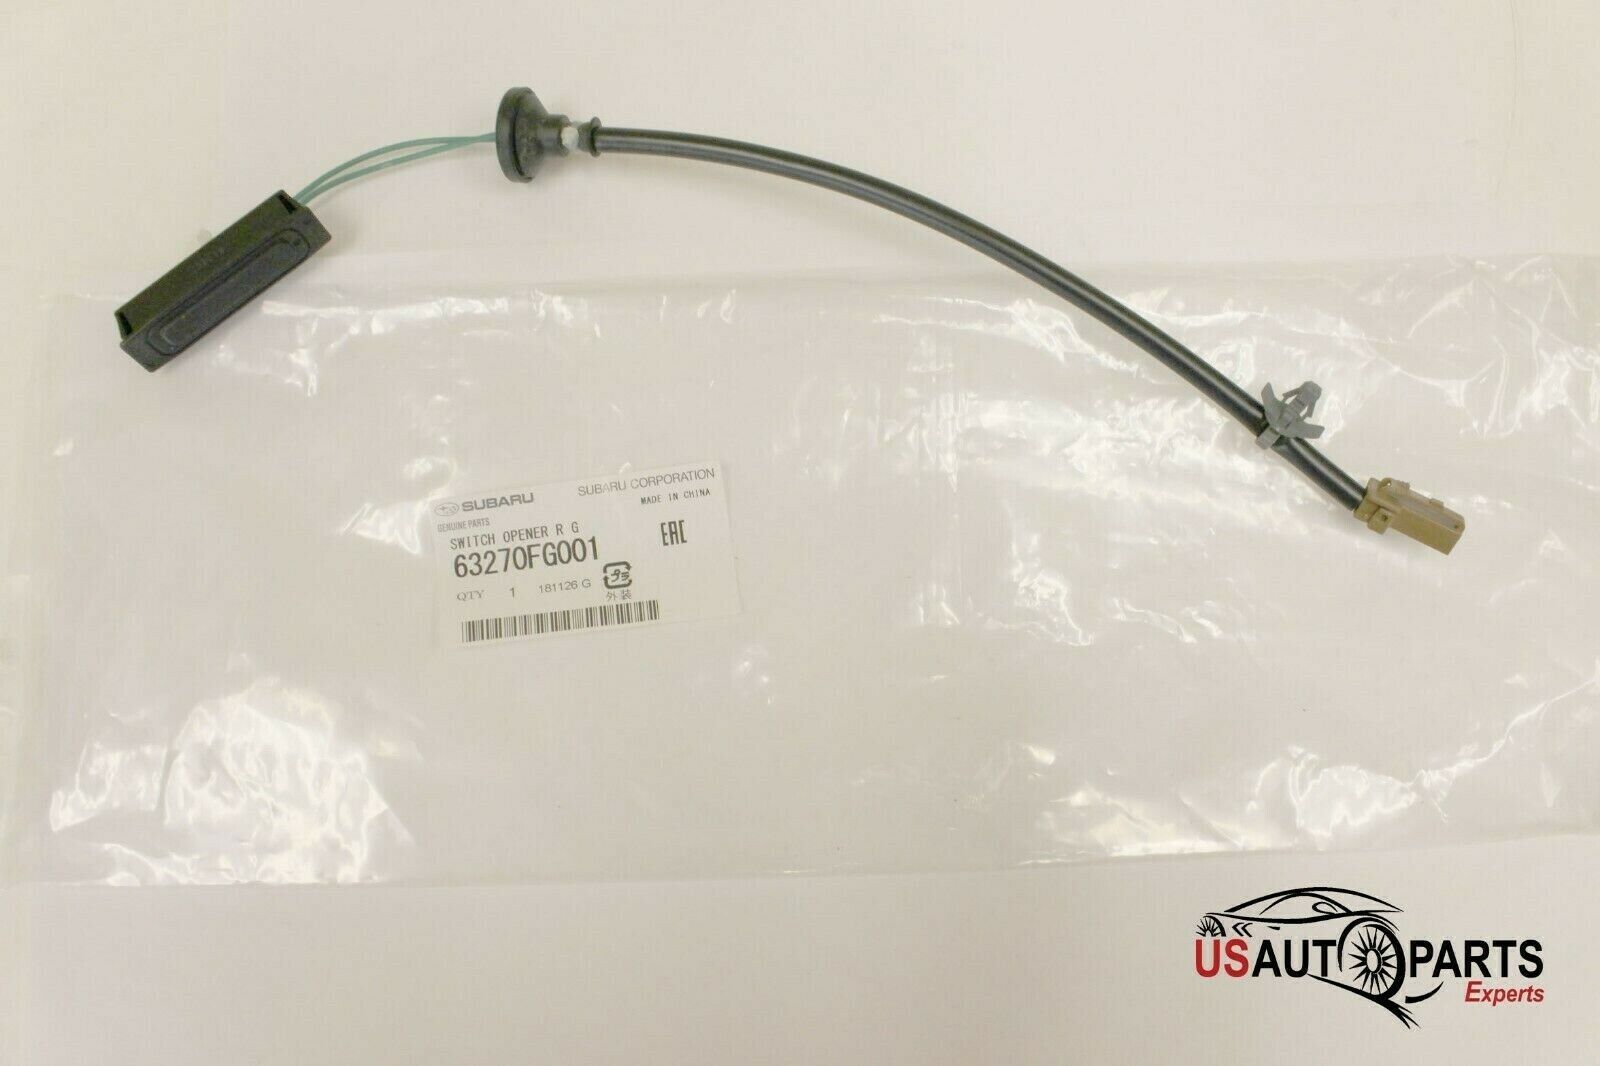 Genuine Subaru Impreza WRX STi Rear Lift Gate Trunk Switch 63270FG001 OEM 08-14